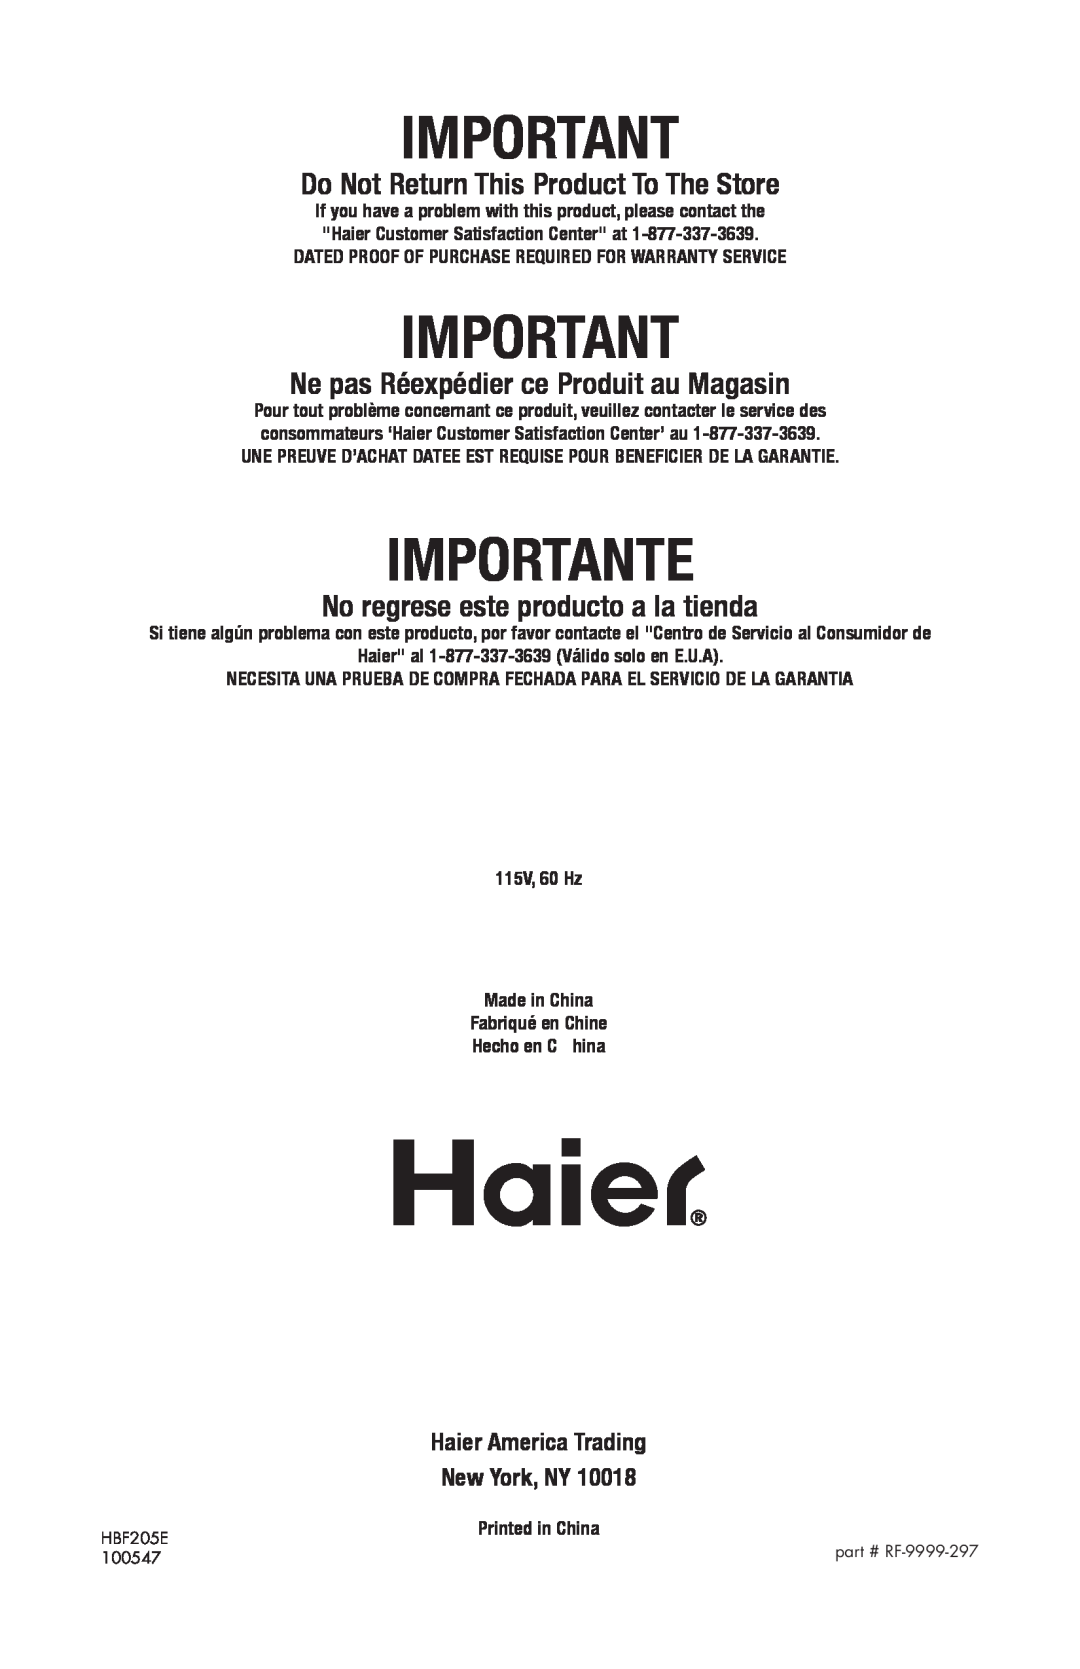 Haier HBF205E user manual Importante, Do Not Return This Product To The Store, Ne pas Réexpédier ce Produit au Magasin 